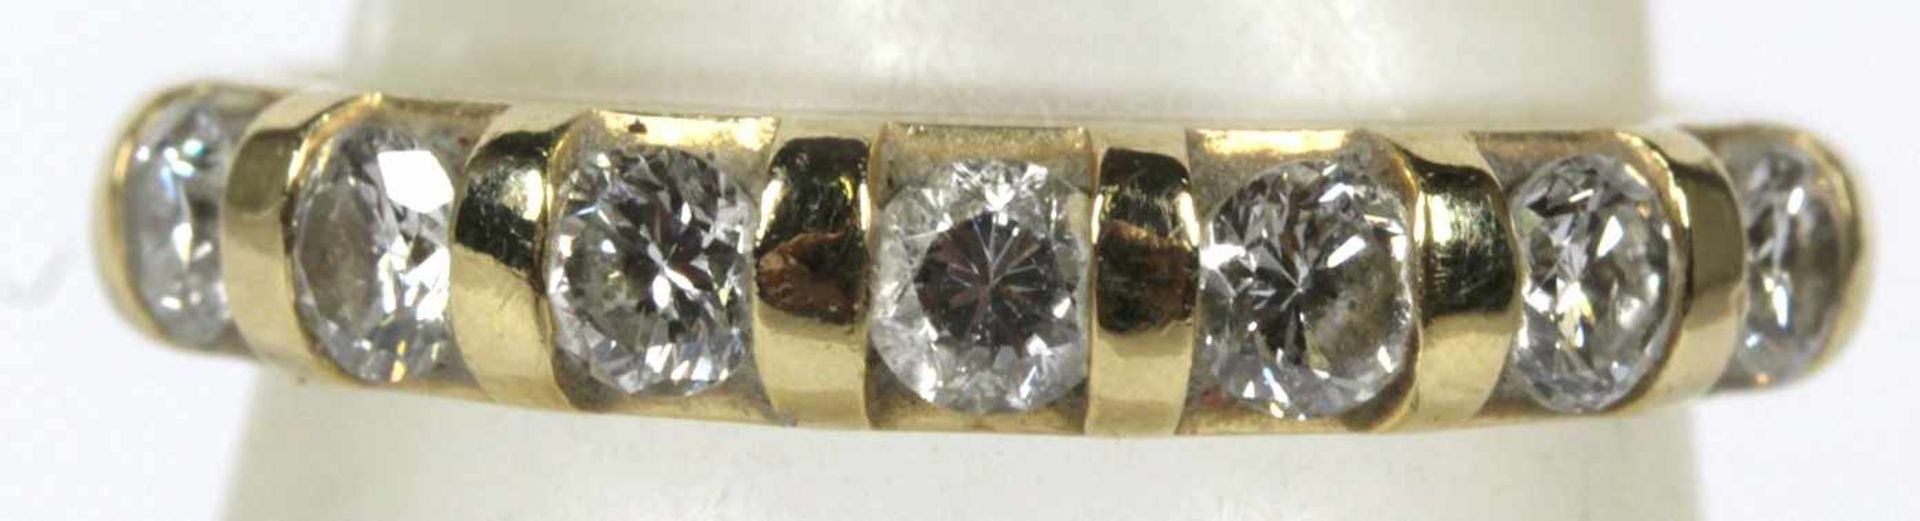 Damenring, GG 585, besetzt mit 7 Brillanten, zus. ca. 0,60 ct., weiß, si.-p., Ringgröße:54- - -20.00